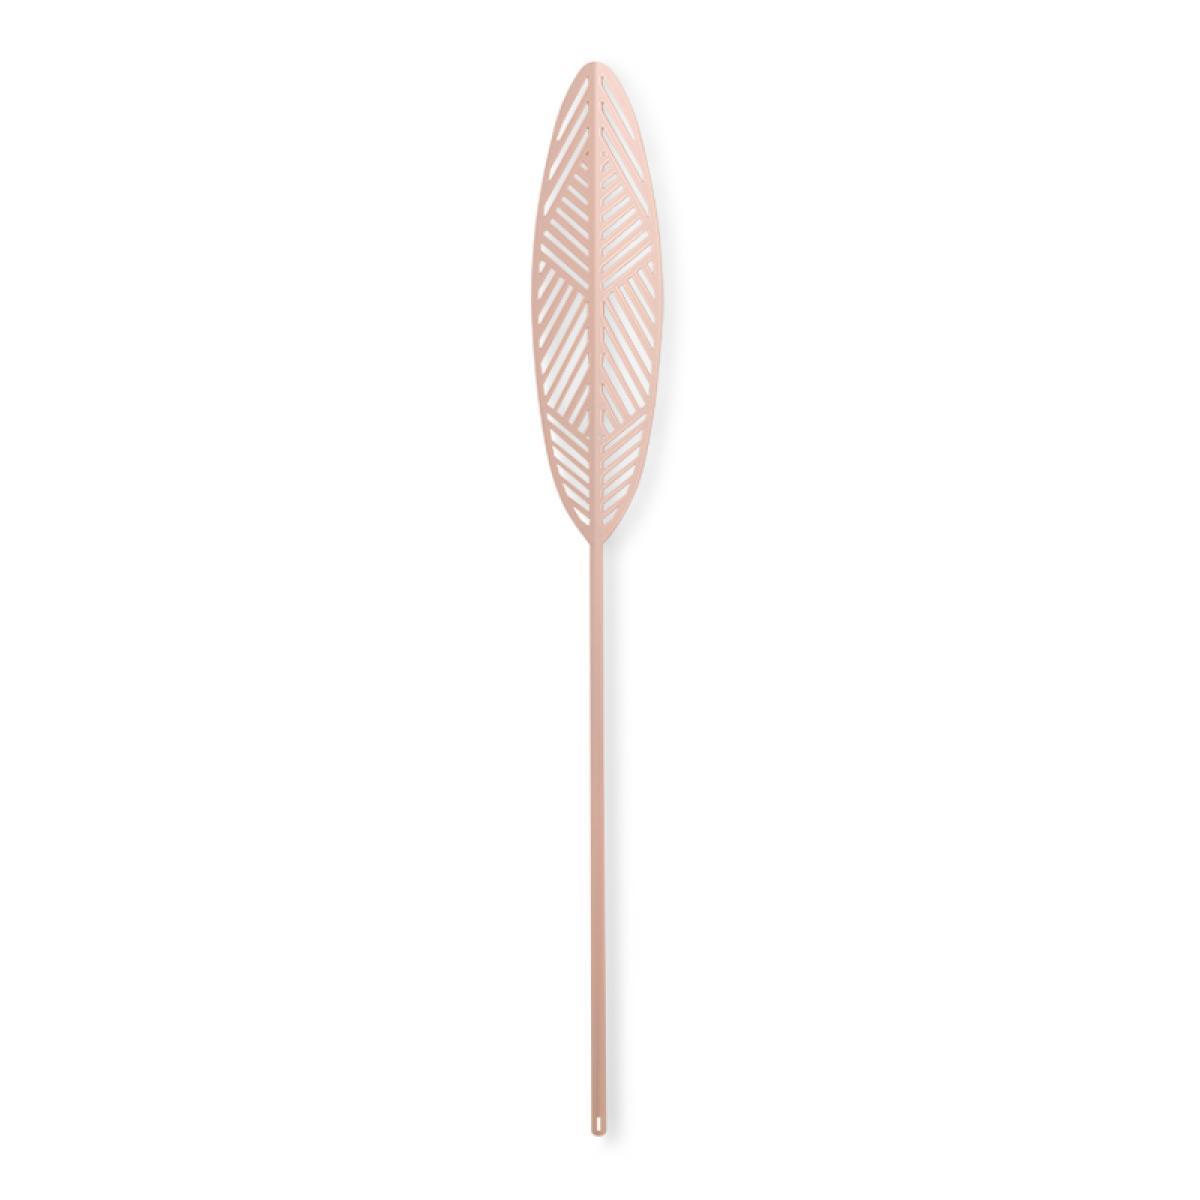 Lucie Kaas Leafike Silva Metalblad Pink, 41 cm